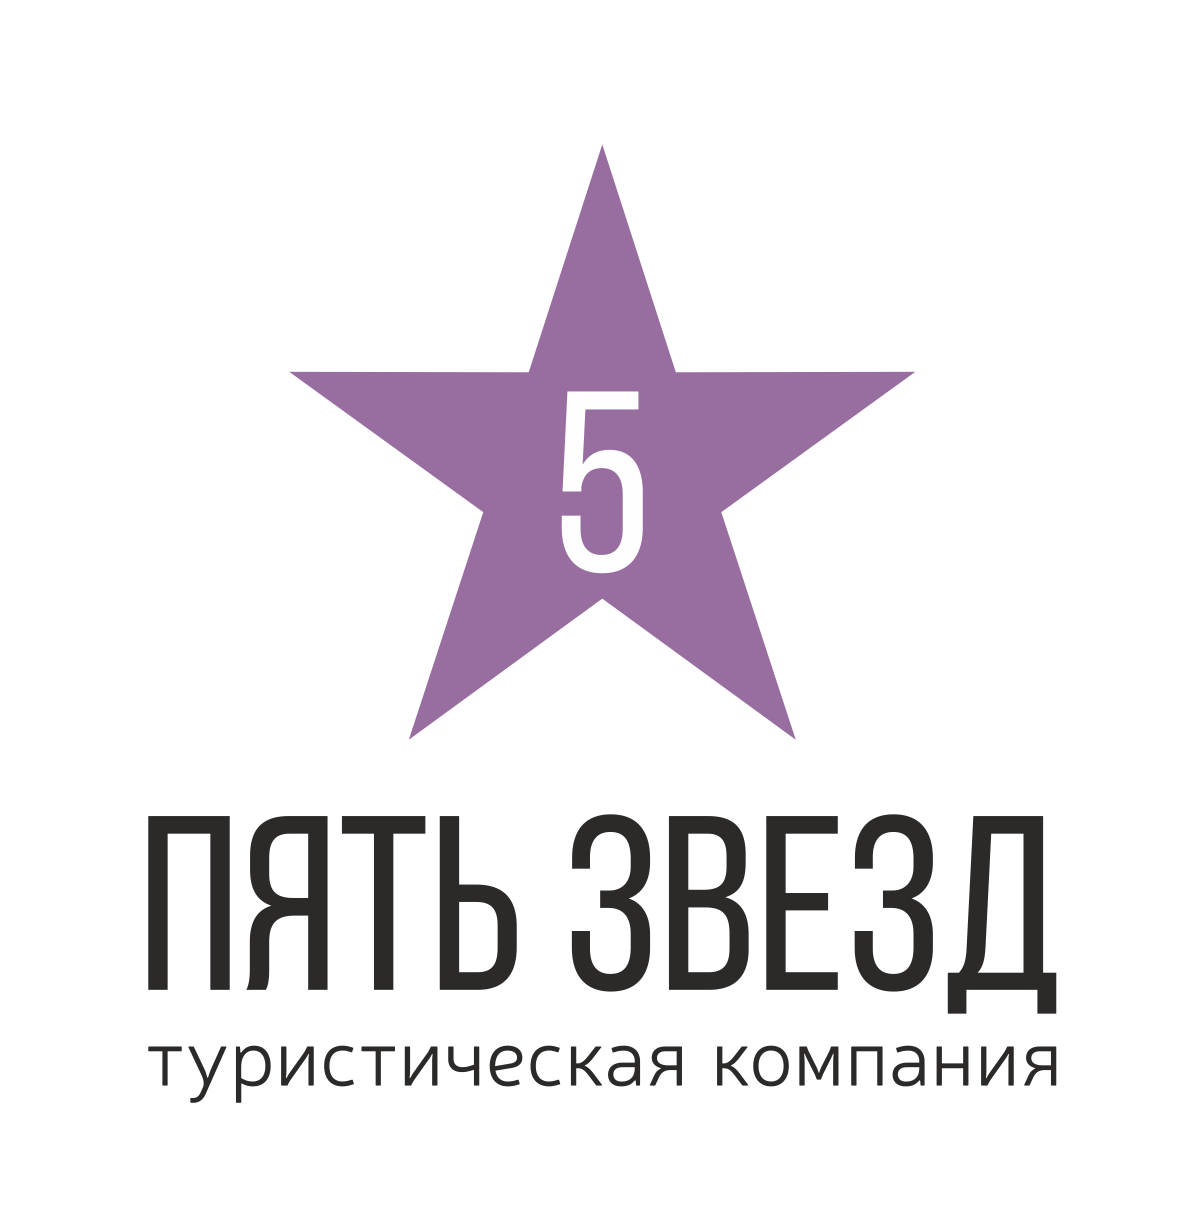 5 stars ru. Пять звезд. Пять звезд оценка. Пять звезд эмблема. Звезды оценка.